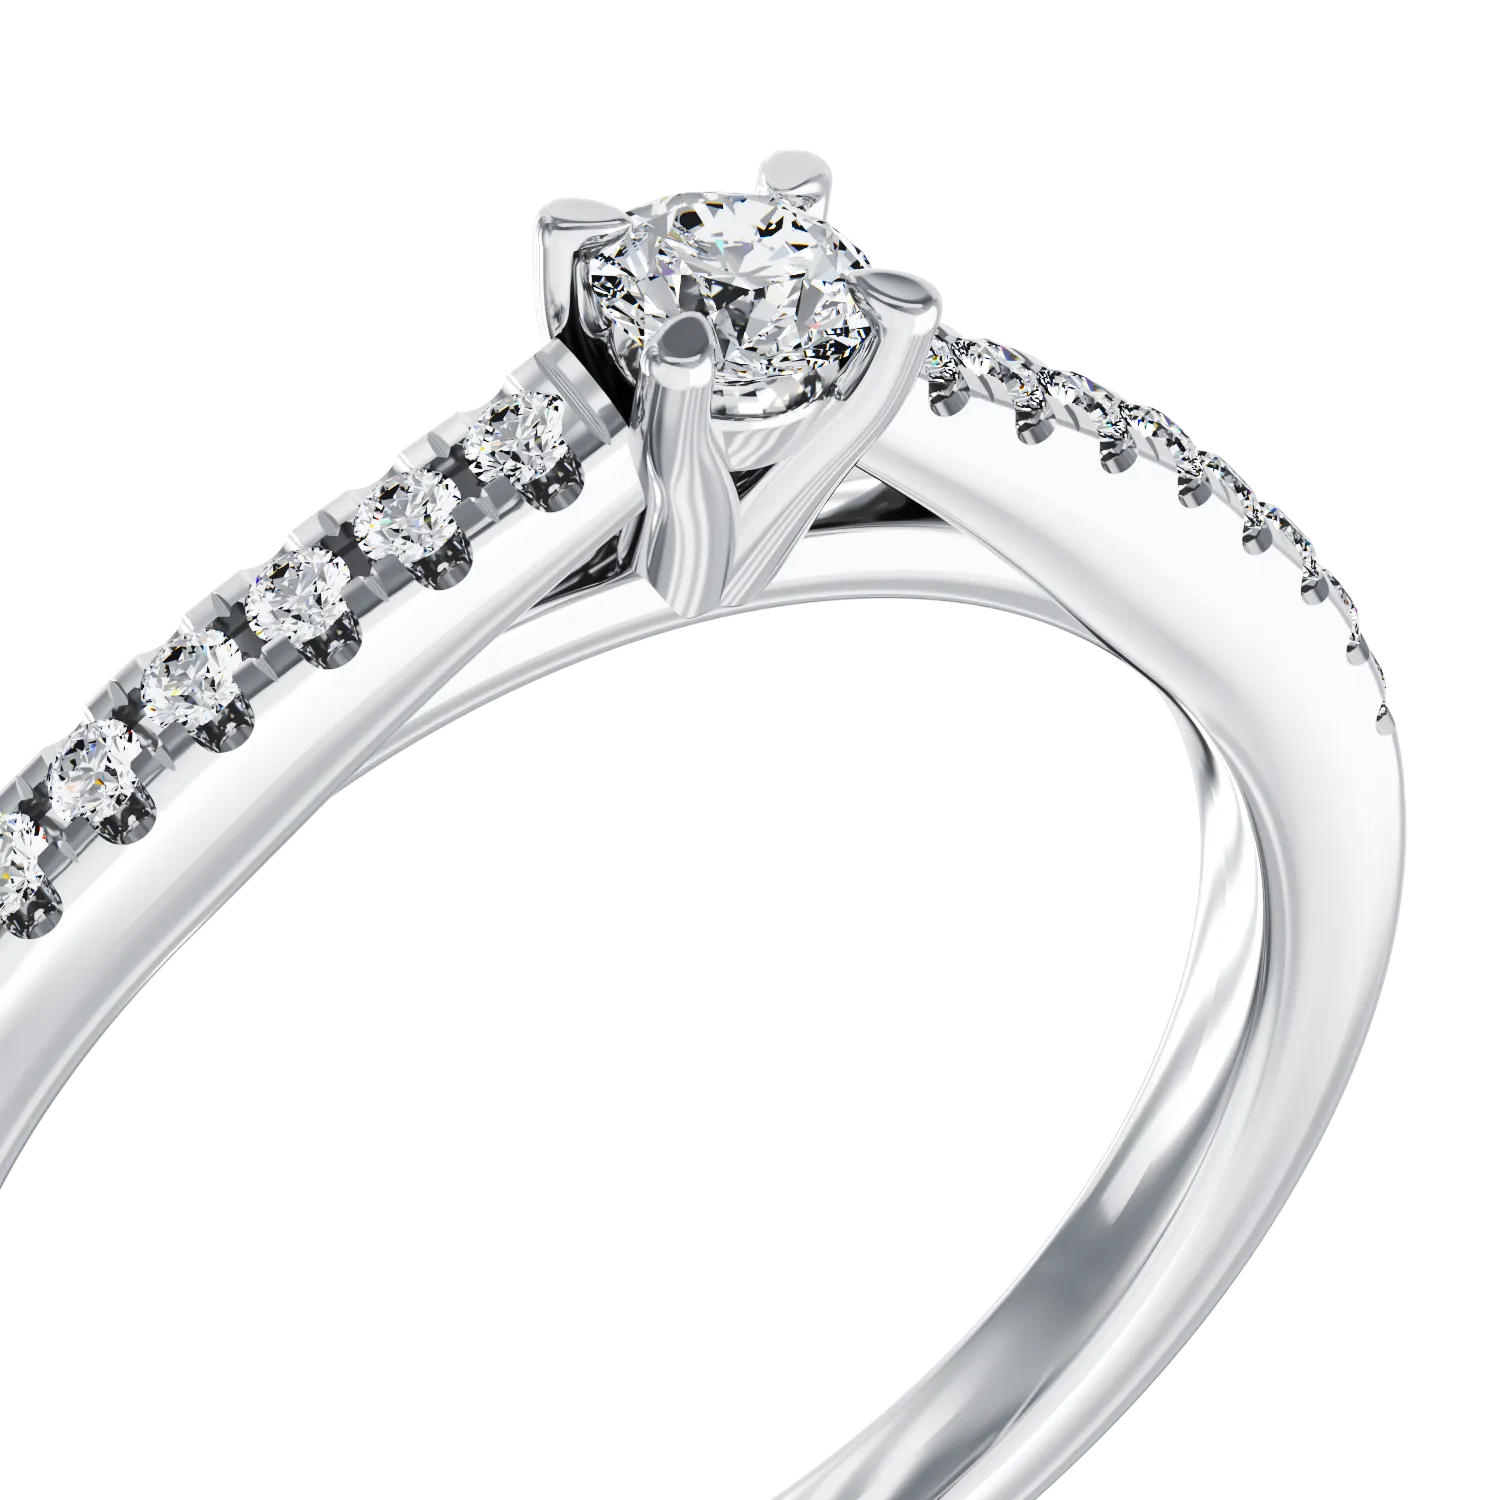 Eljegyzési gyűrű 18K-os fehér aranyból 0,2ct gyémánttal és 0,19ct gyémánttal. Gramm: 2,85